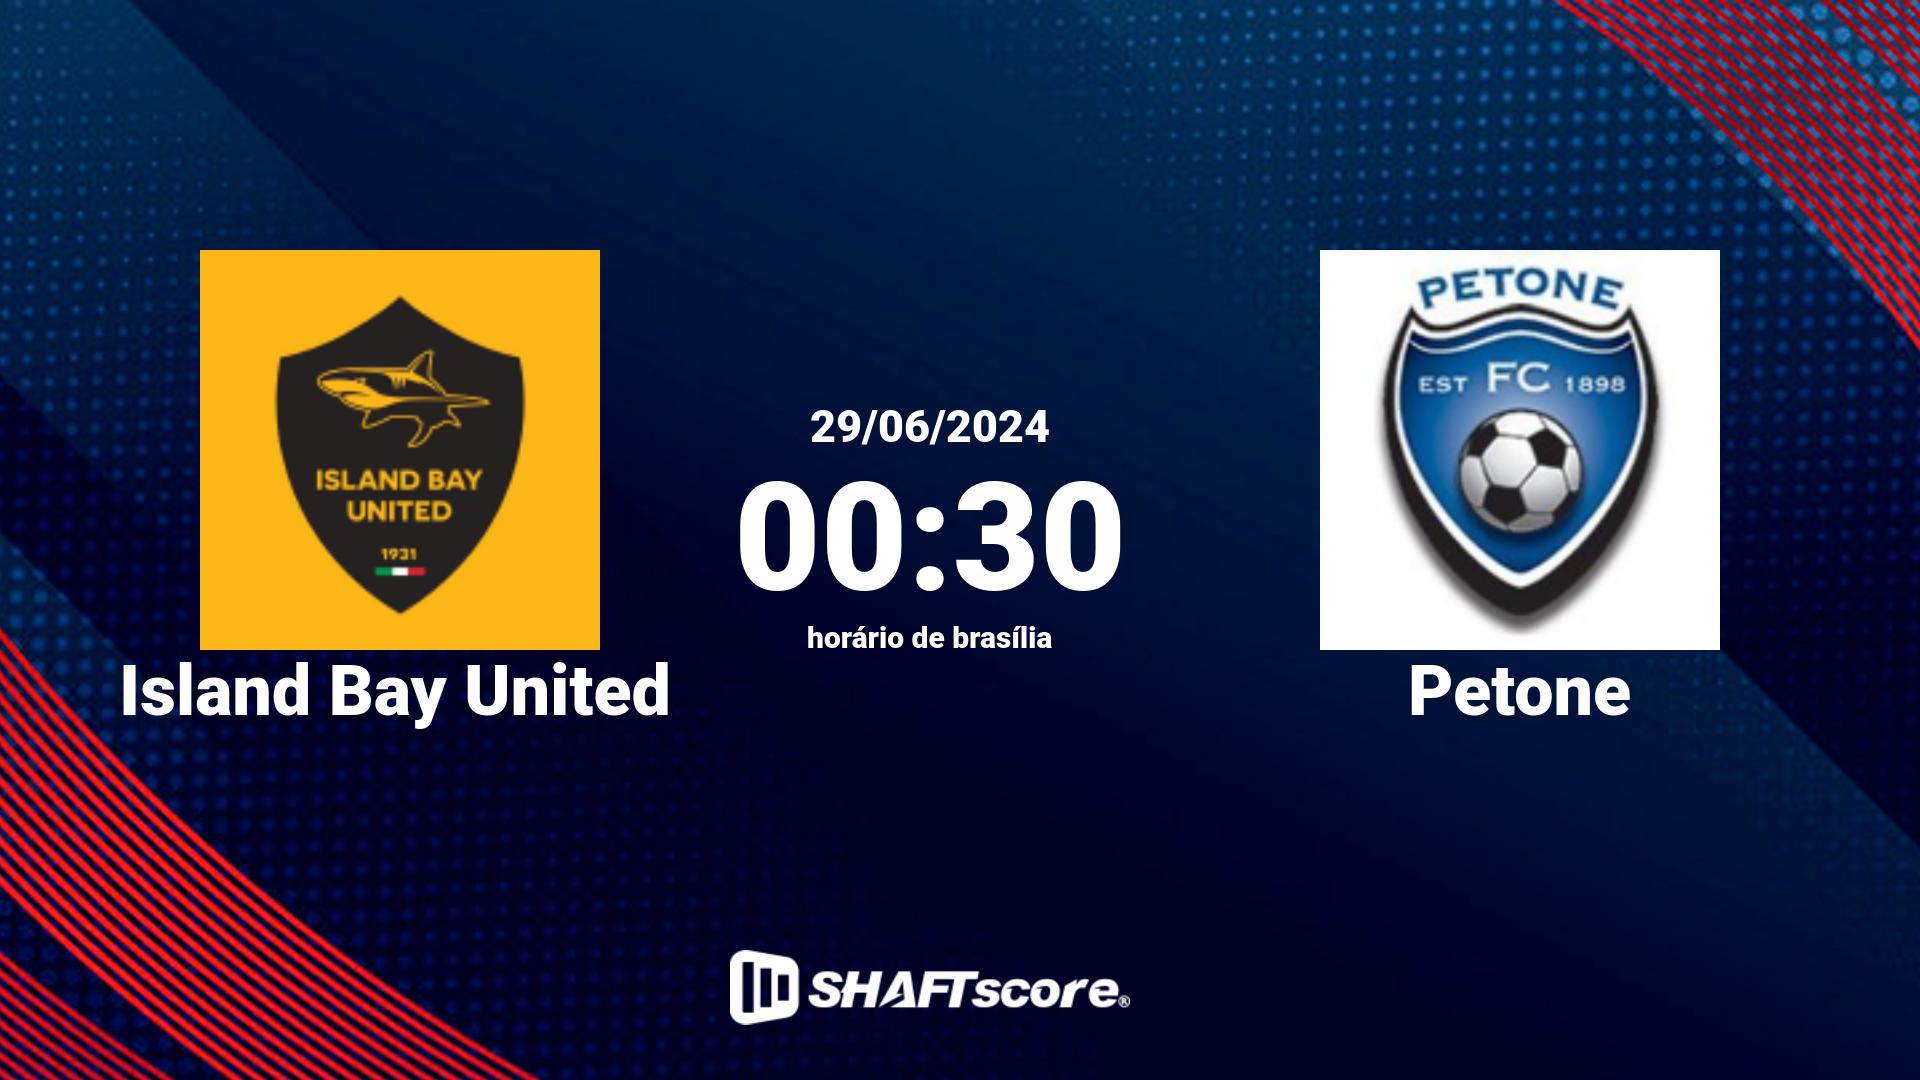 Estatísticas do jogo Island Bay United vs Petone 29.06 00:30